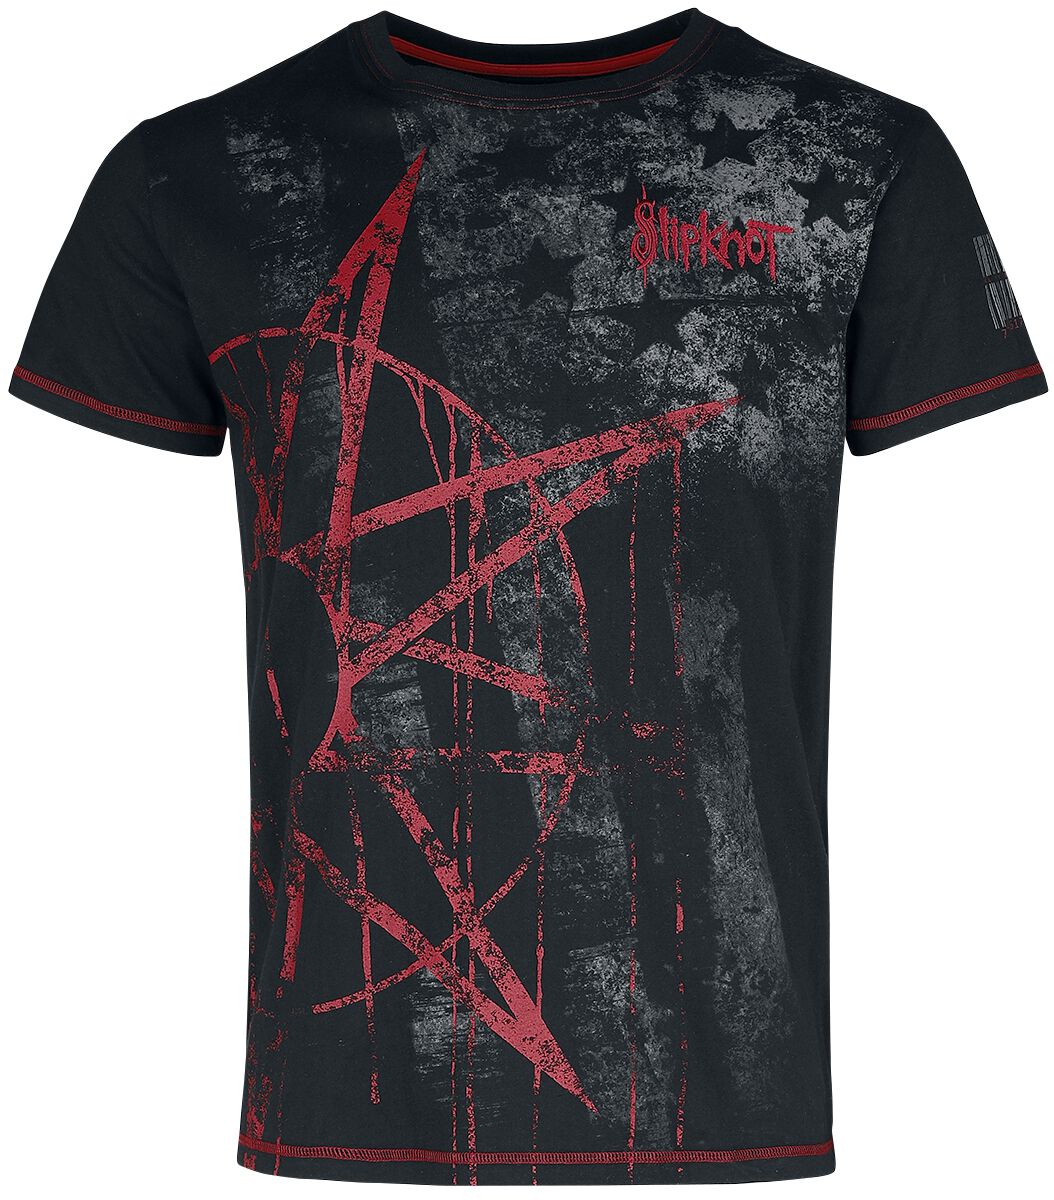 Slipknot T-Shirt - EMP Signature Collection - S bis 5XL - für Männer - Größe XXL - schwarz  - EMP exklusives Merchandise!